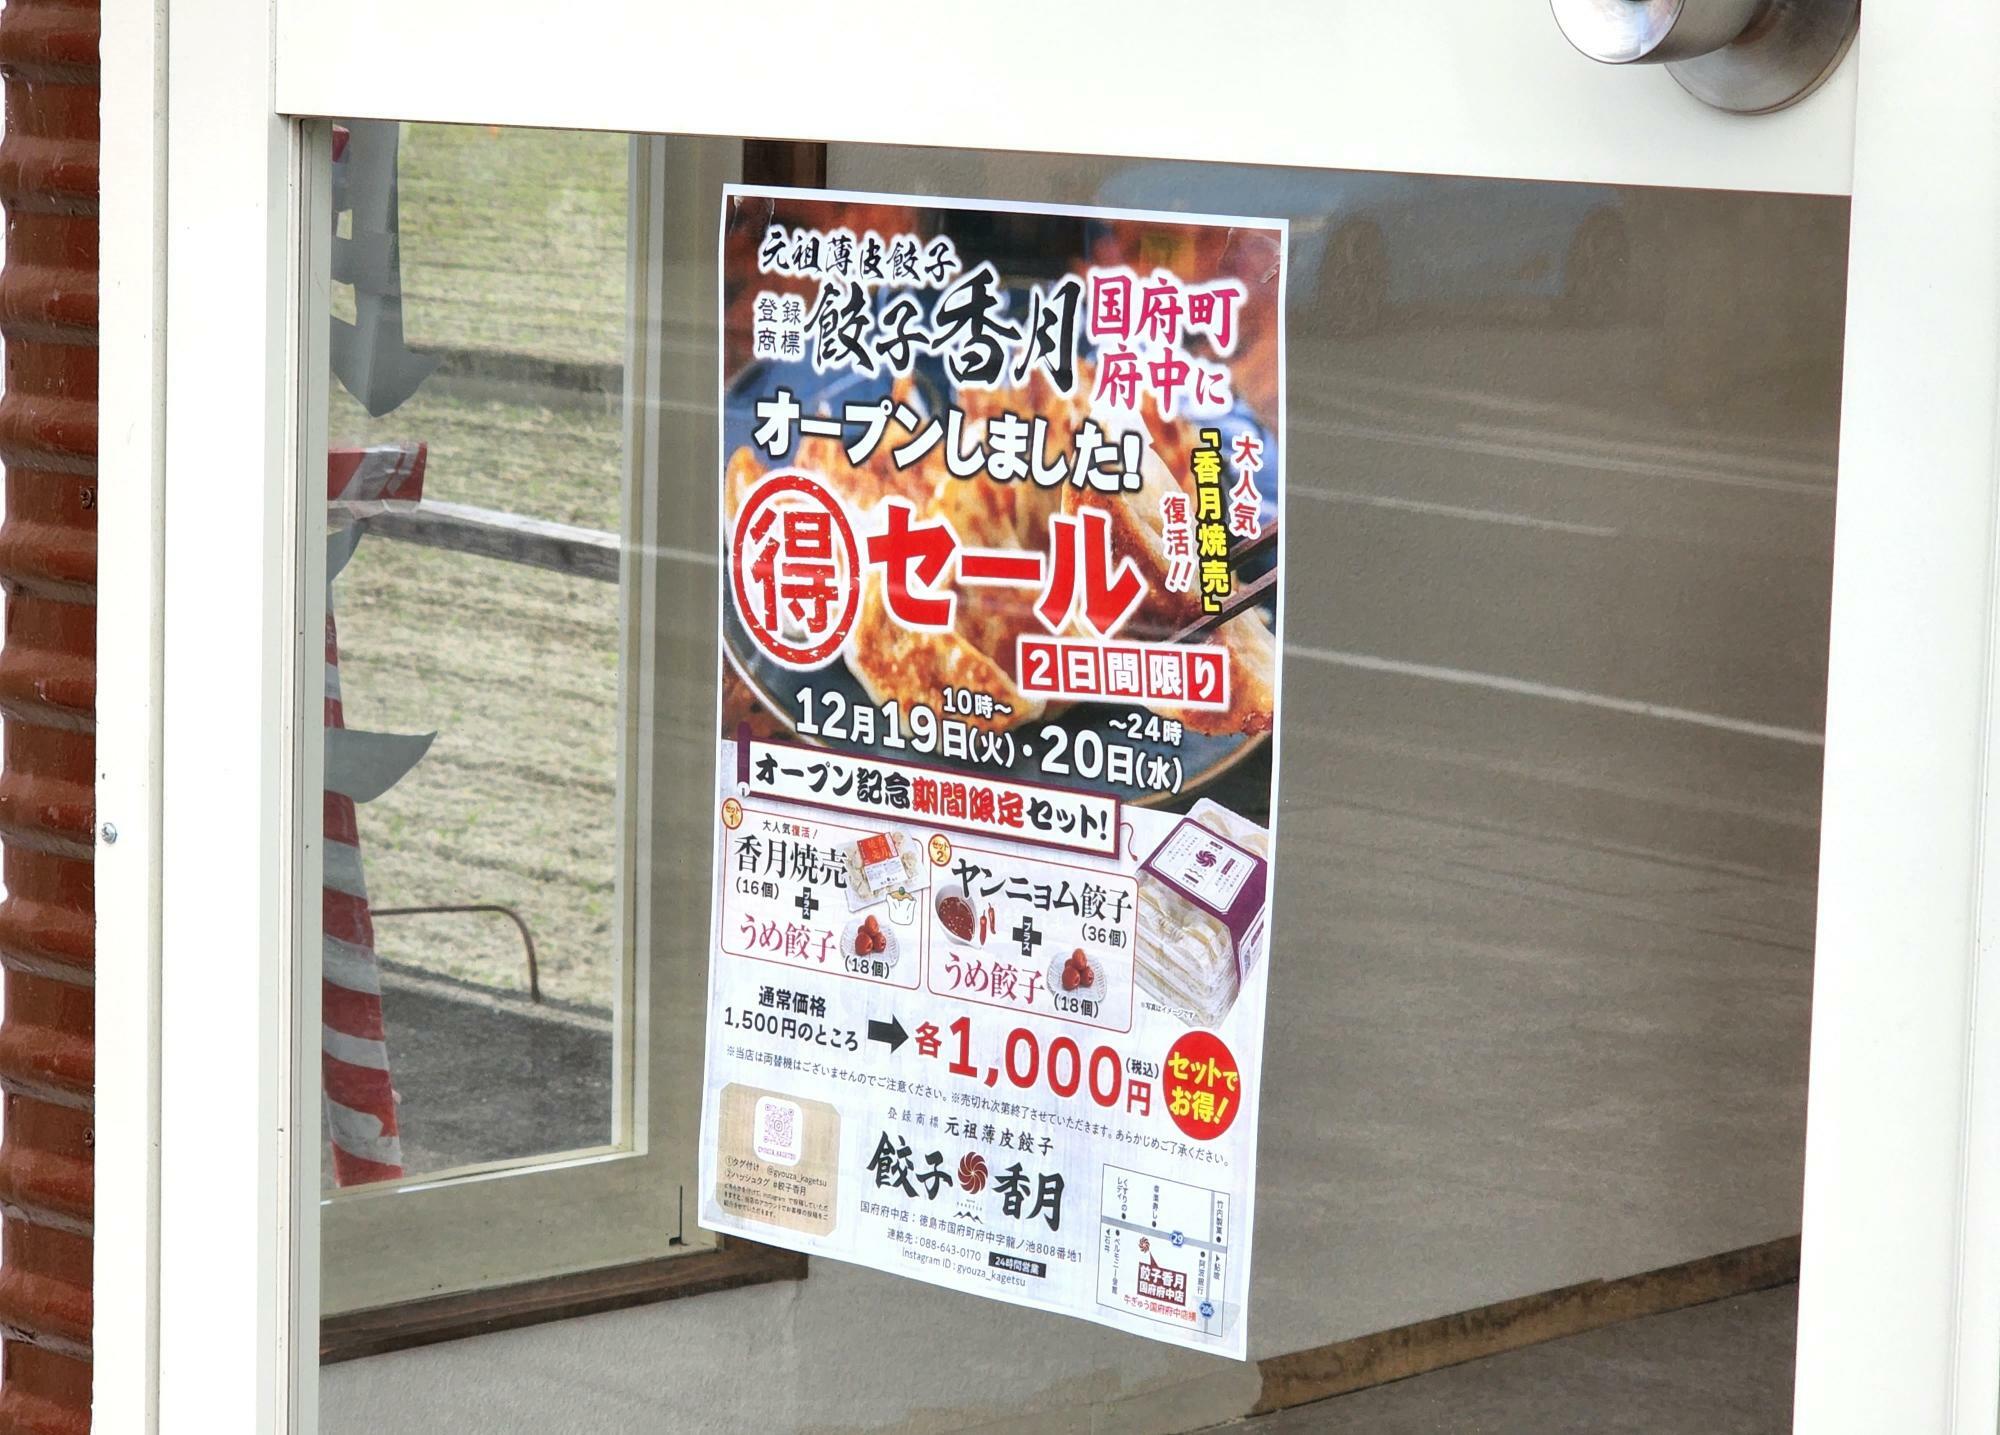 「餃子香月 国府府中店」の出入口に貼られていたチラシ。